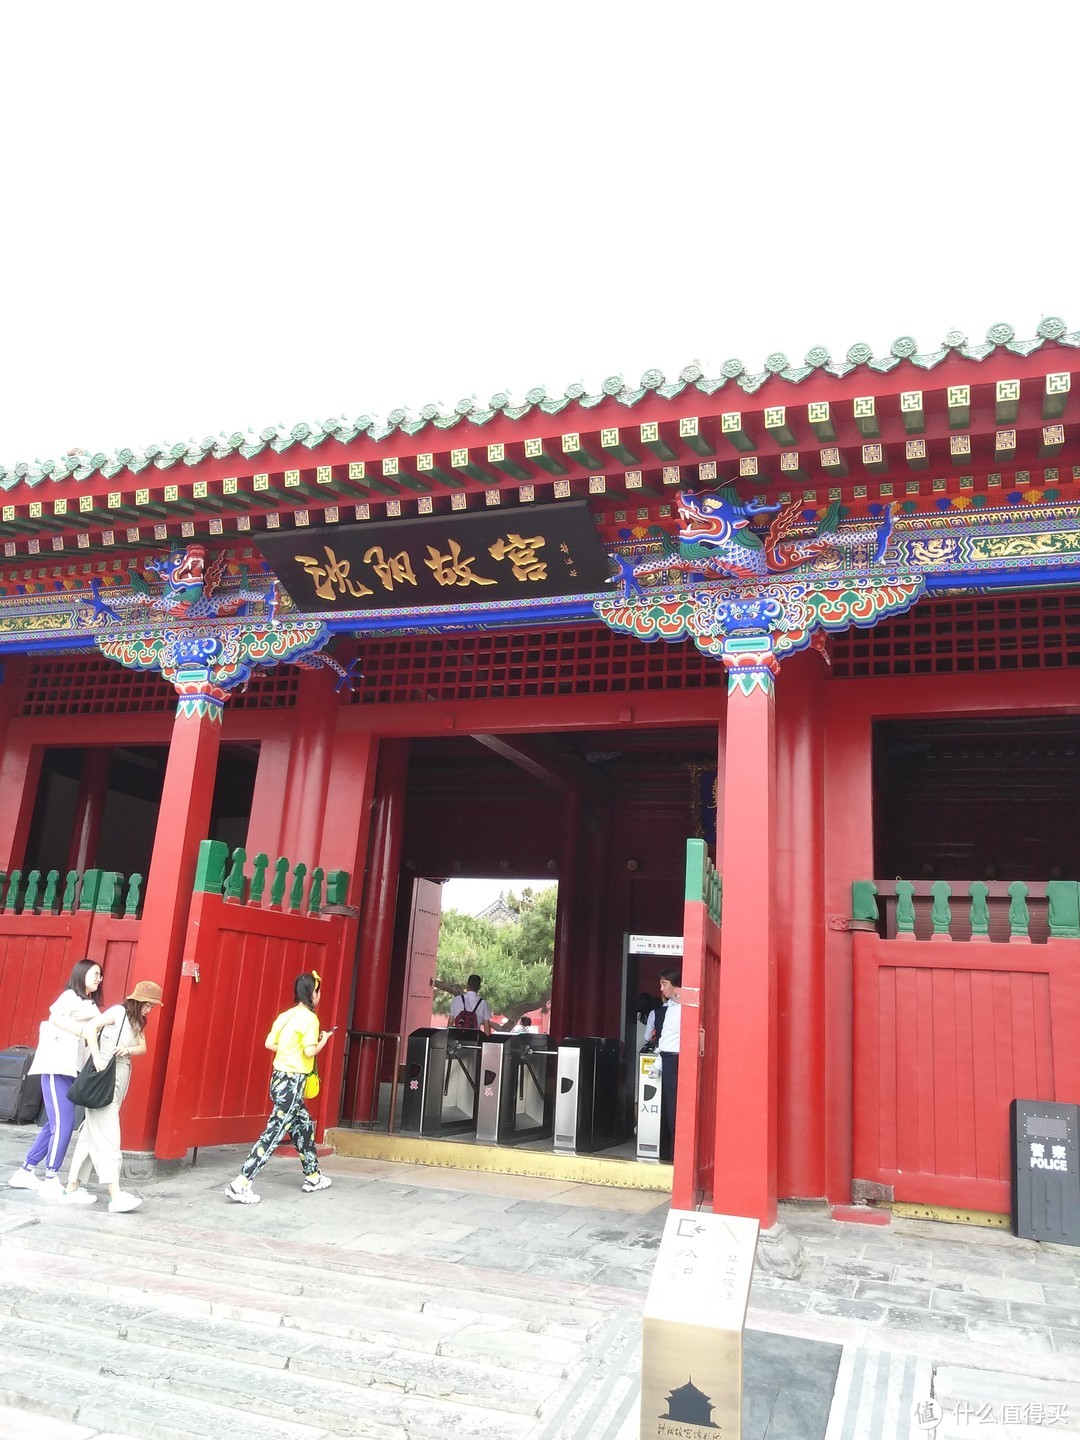 门匾上“沈阳故宫”应该也是郭沫若写的